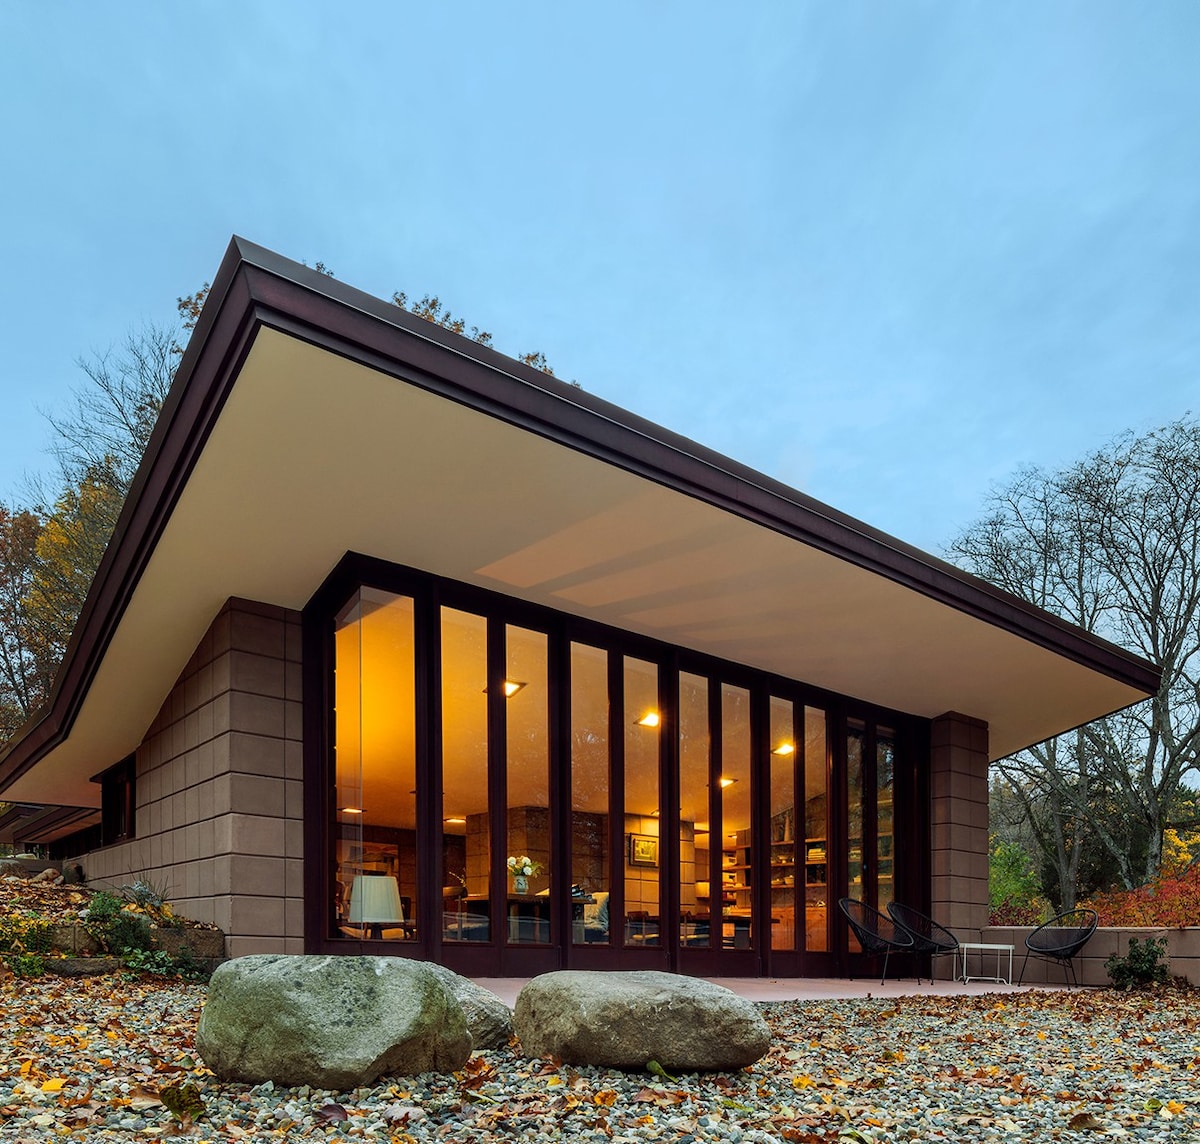 Un impressionante alloggio in mattoni progettato da Frank Lloyd Wright in un ambiente naturale, con un lato interamente di vetrate.